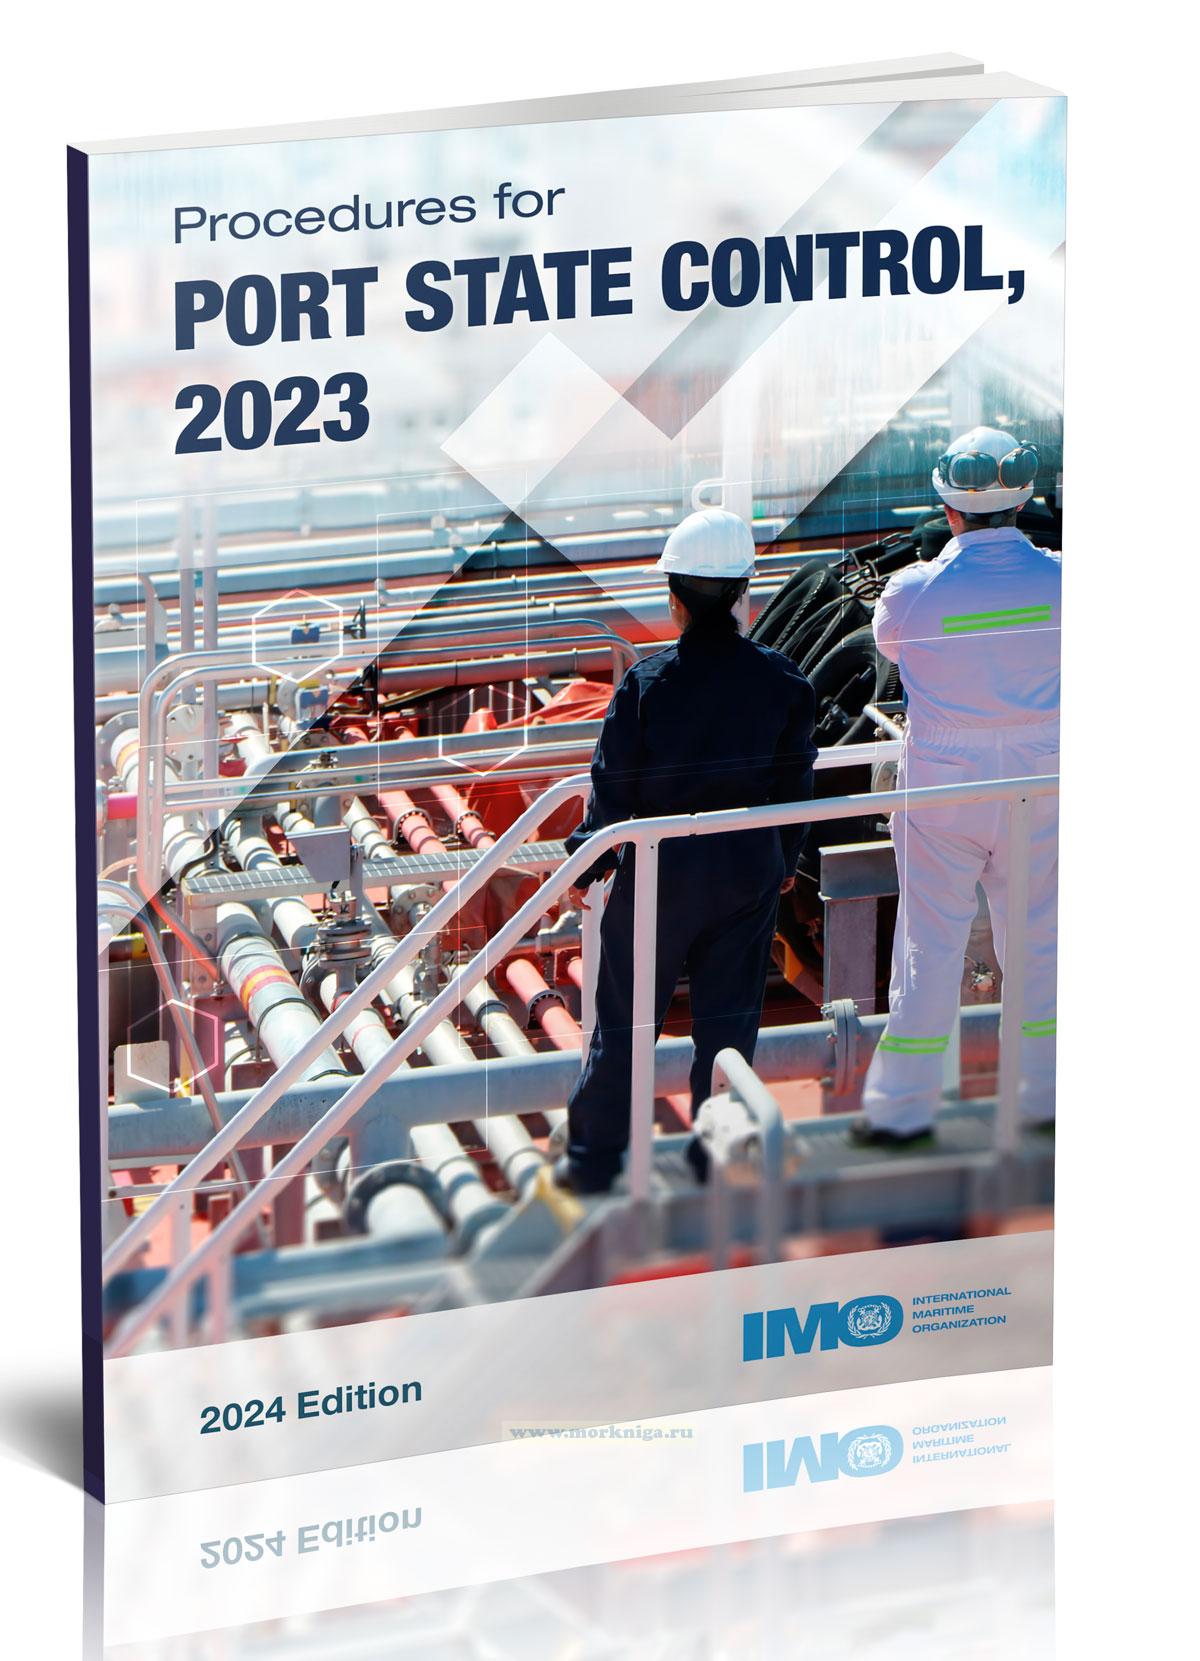 Procedures for Port State Control 2023/Процедуры государственного контроля в порту 2023